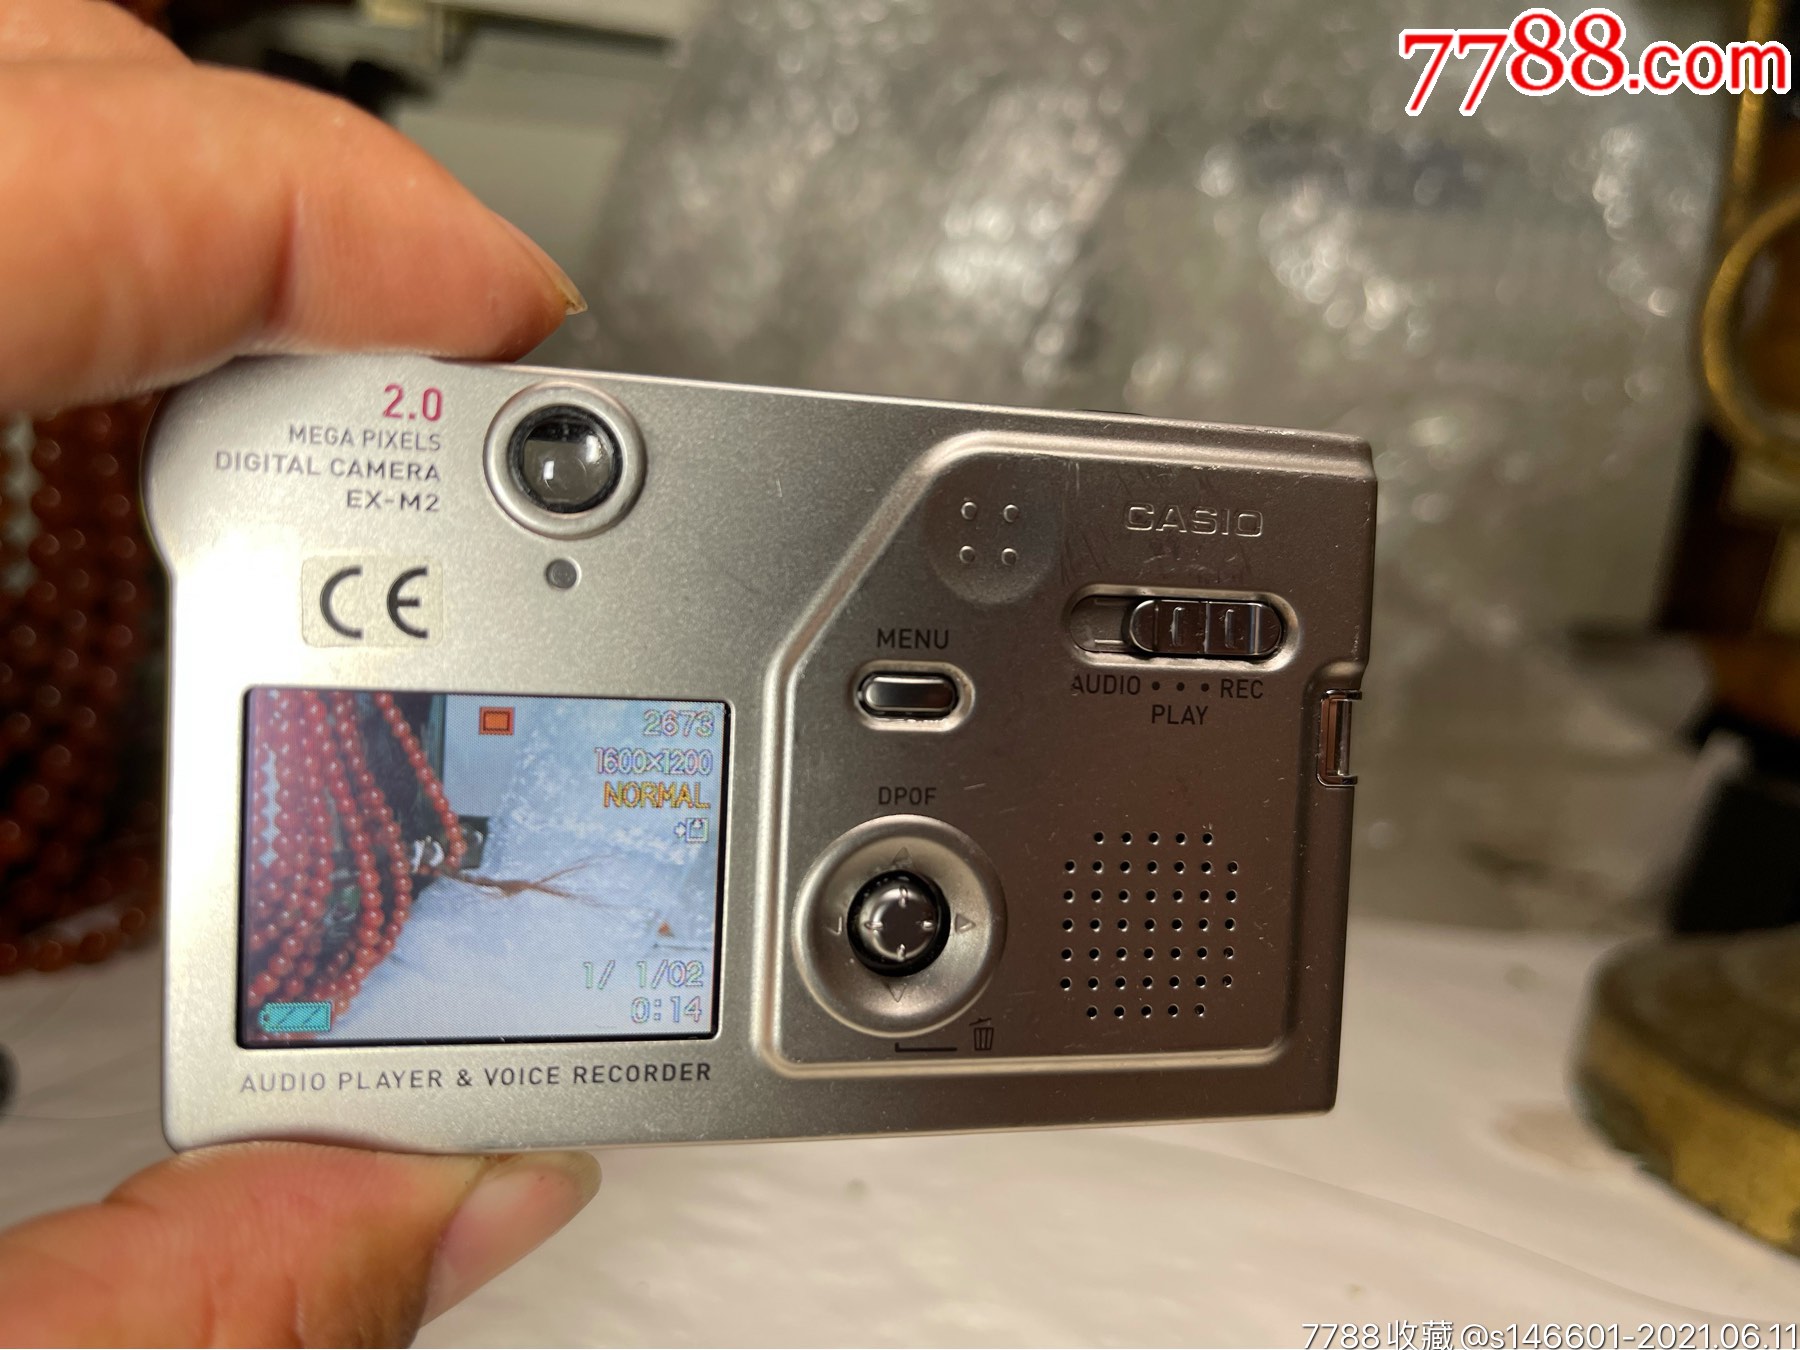 卡西欧ex-m2码数相机,最超薄的数码相机,能拍照,拍视频,听歌,功能正常